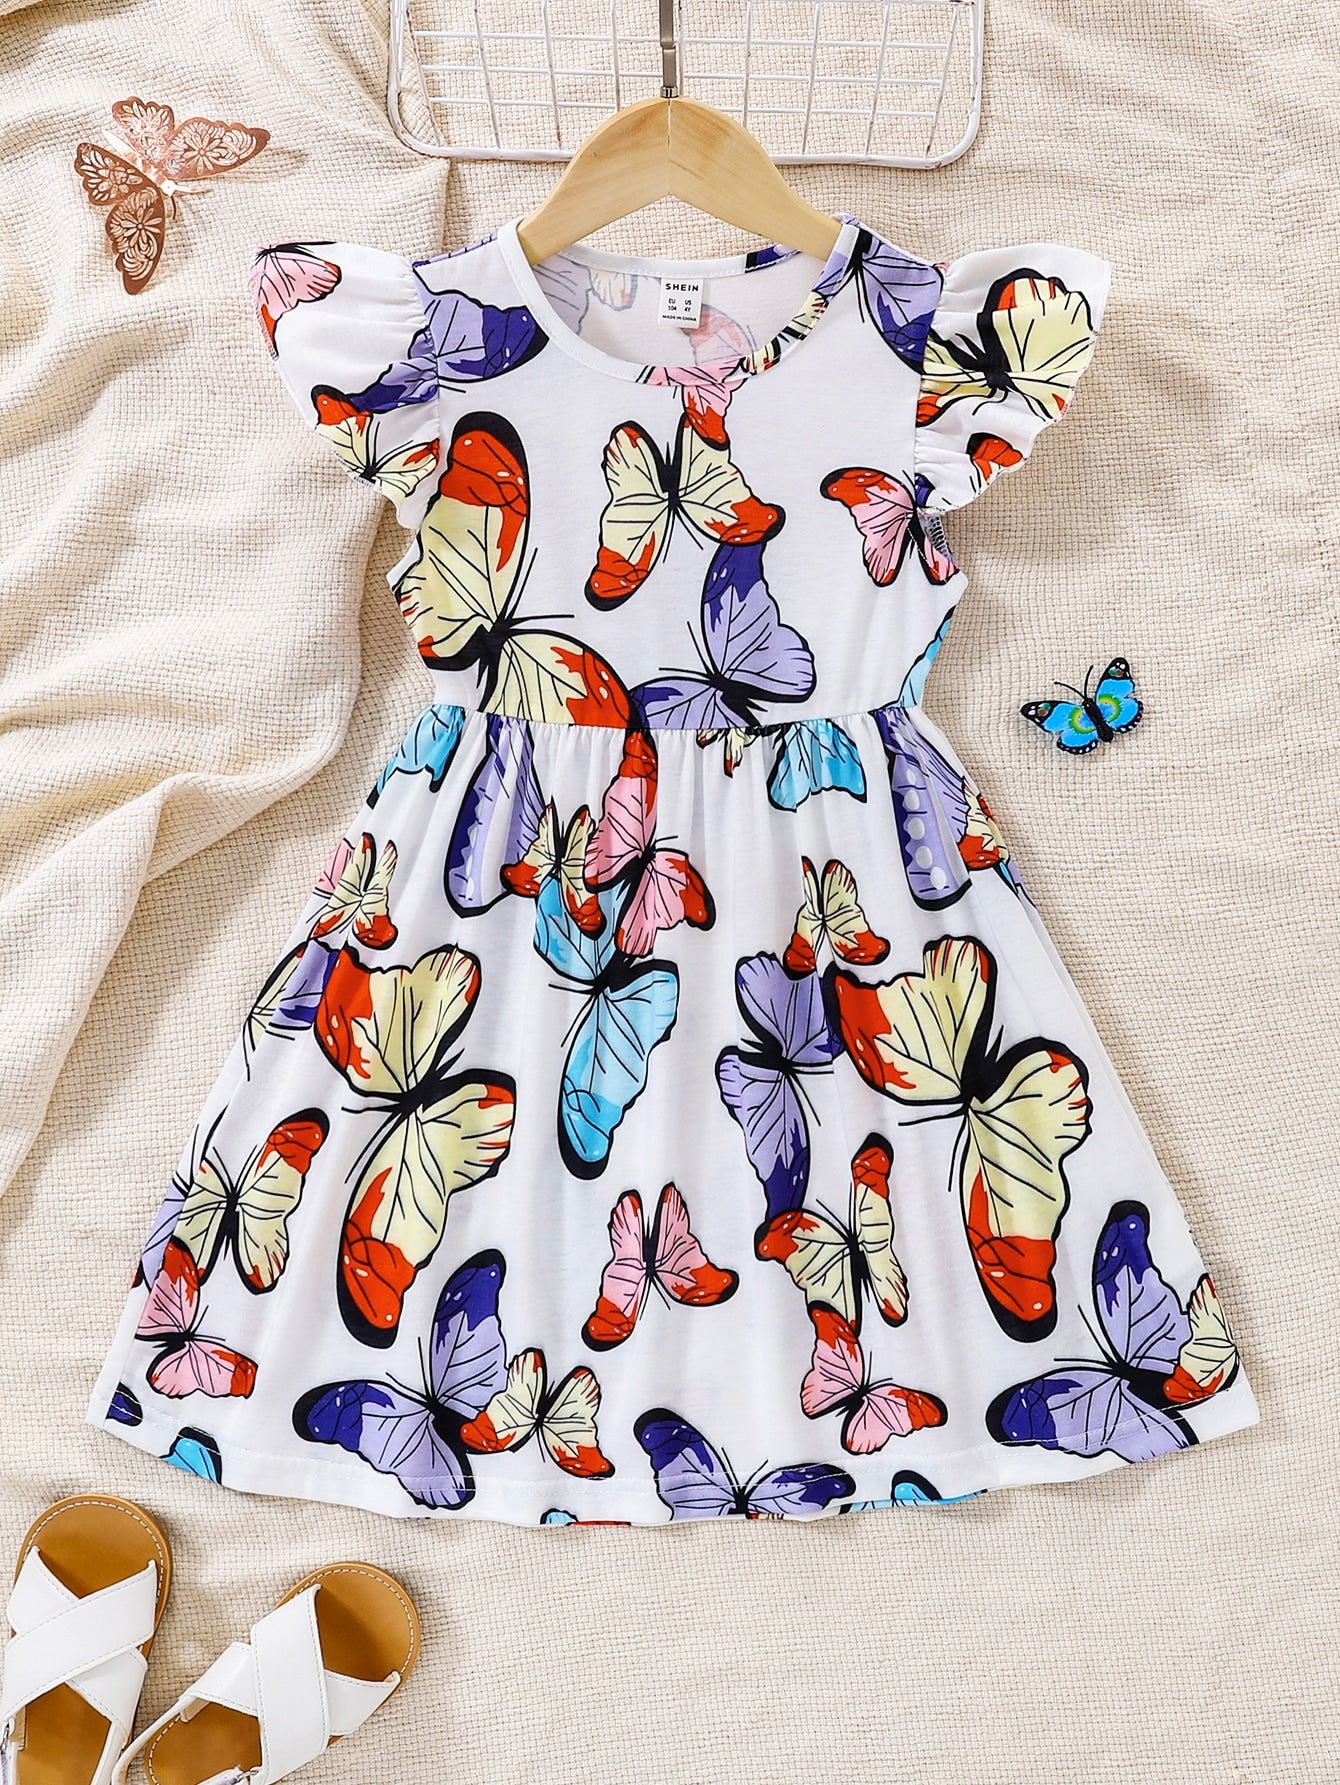 Toddler Girls Butterfly Print Ruffle Trim Dress